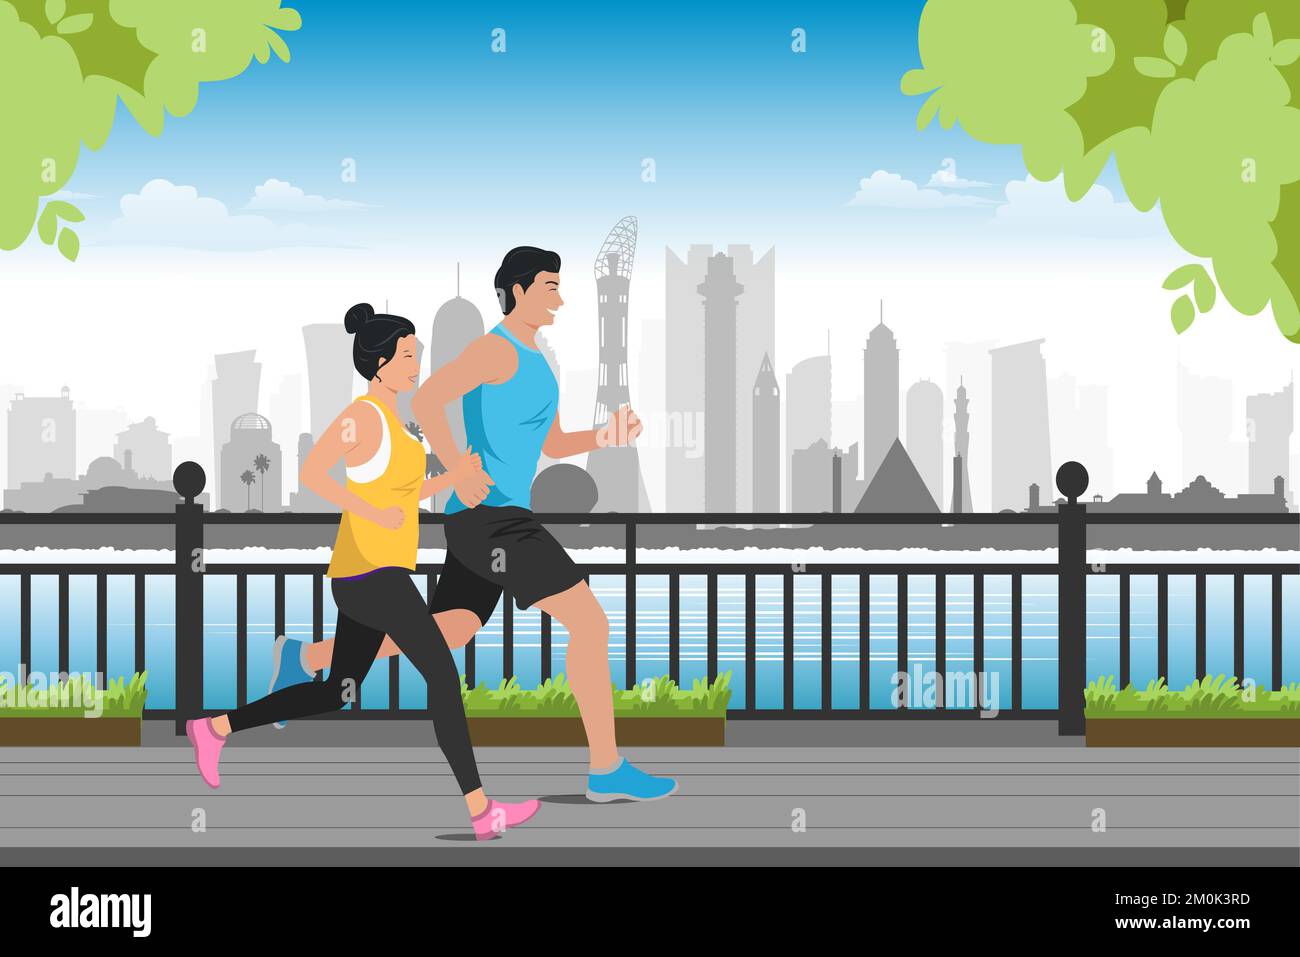 jeune couple asiatique faisant de l'exercice jogging en plein air dans la ville moderne Illustration de Vecteur